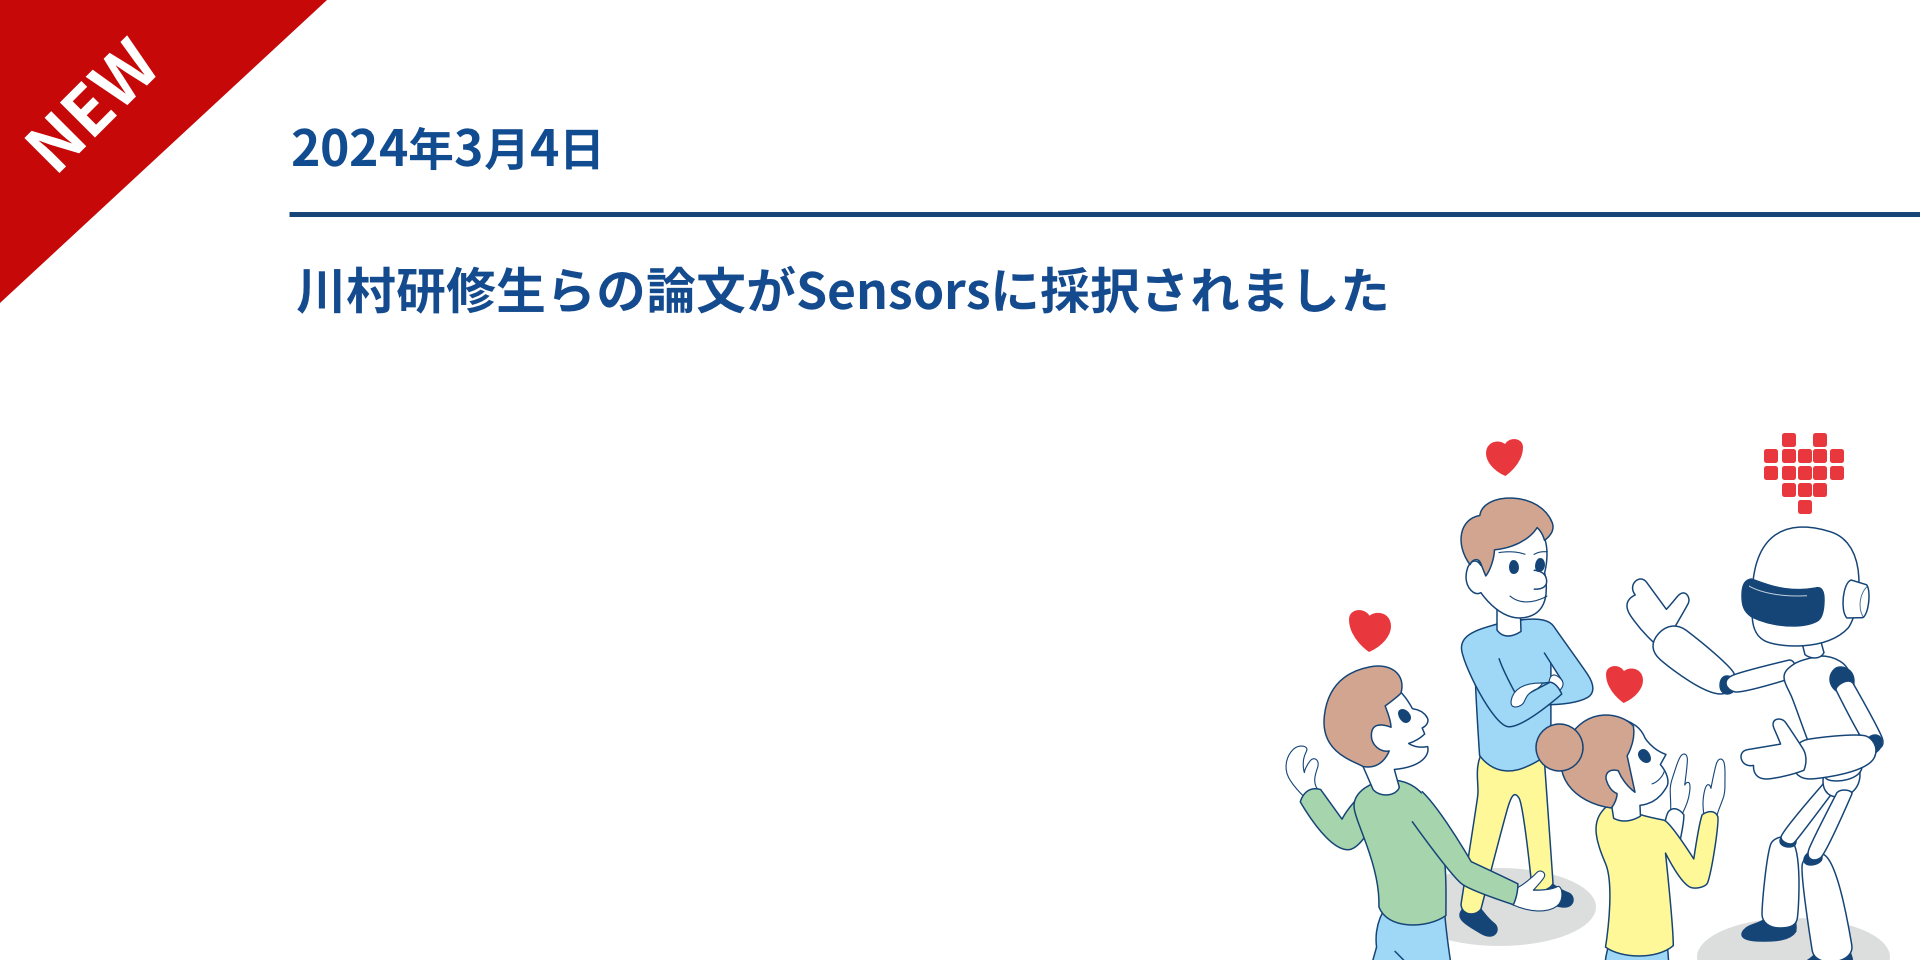 川村研修生らの論文がSensorsに採択されました